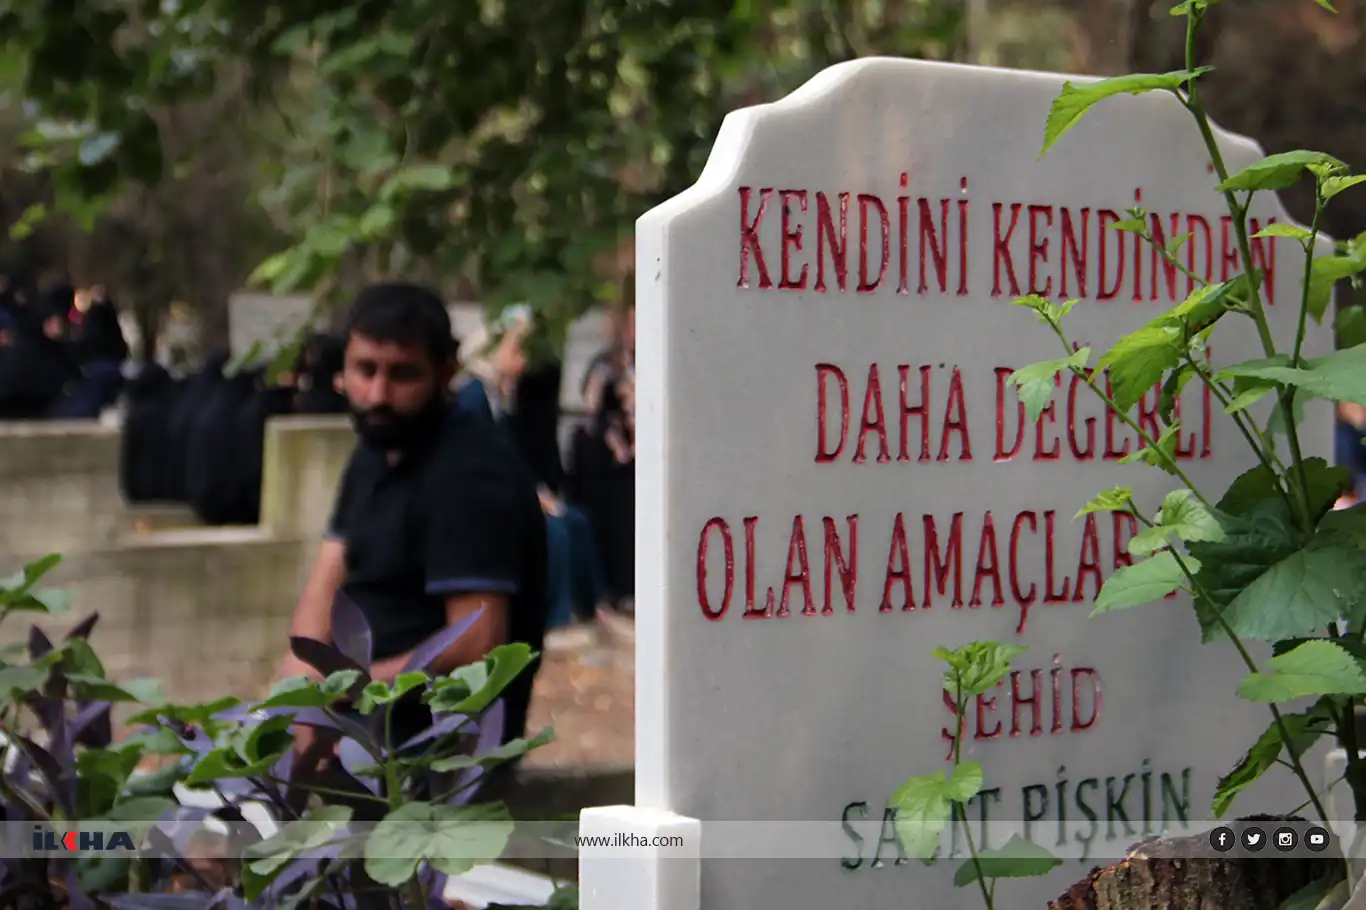 Adana mourns Martyr Sacit Pişgin one year after his death